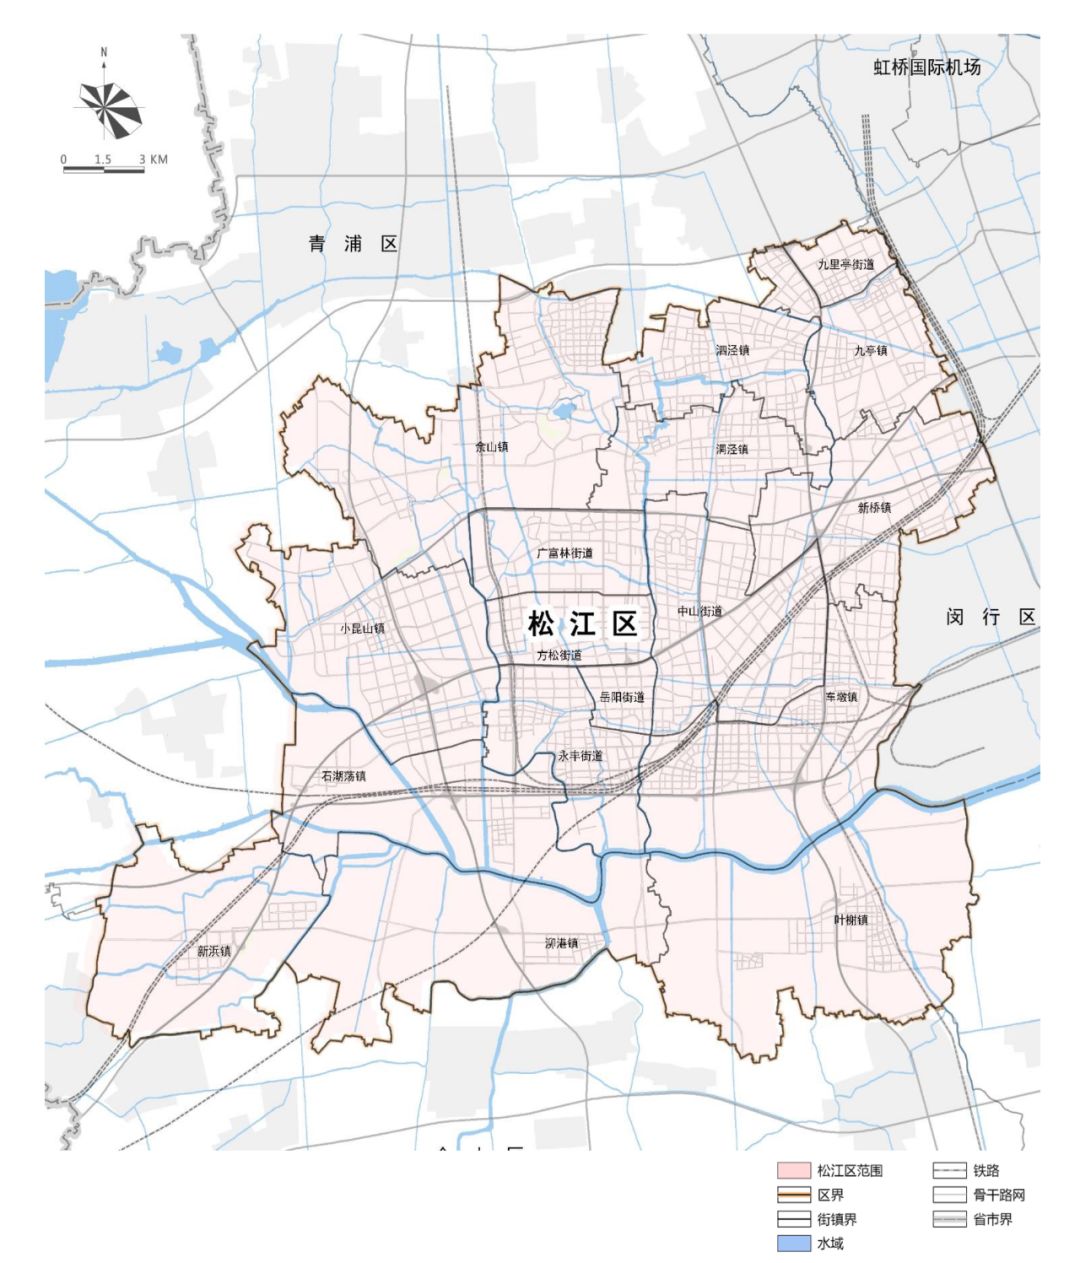 规划期限●本次规划范围为松江区行政辖区范围,规划面积604